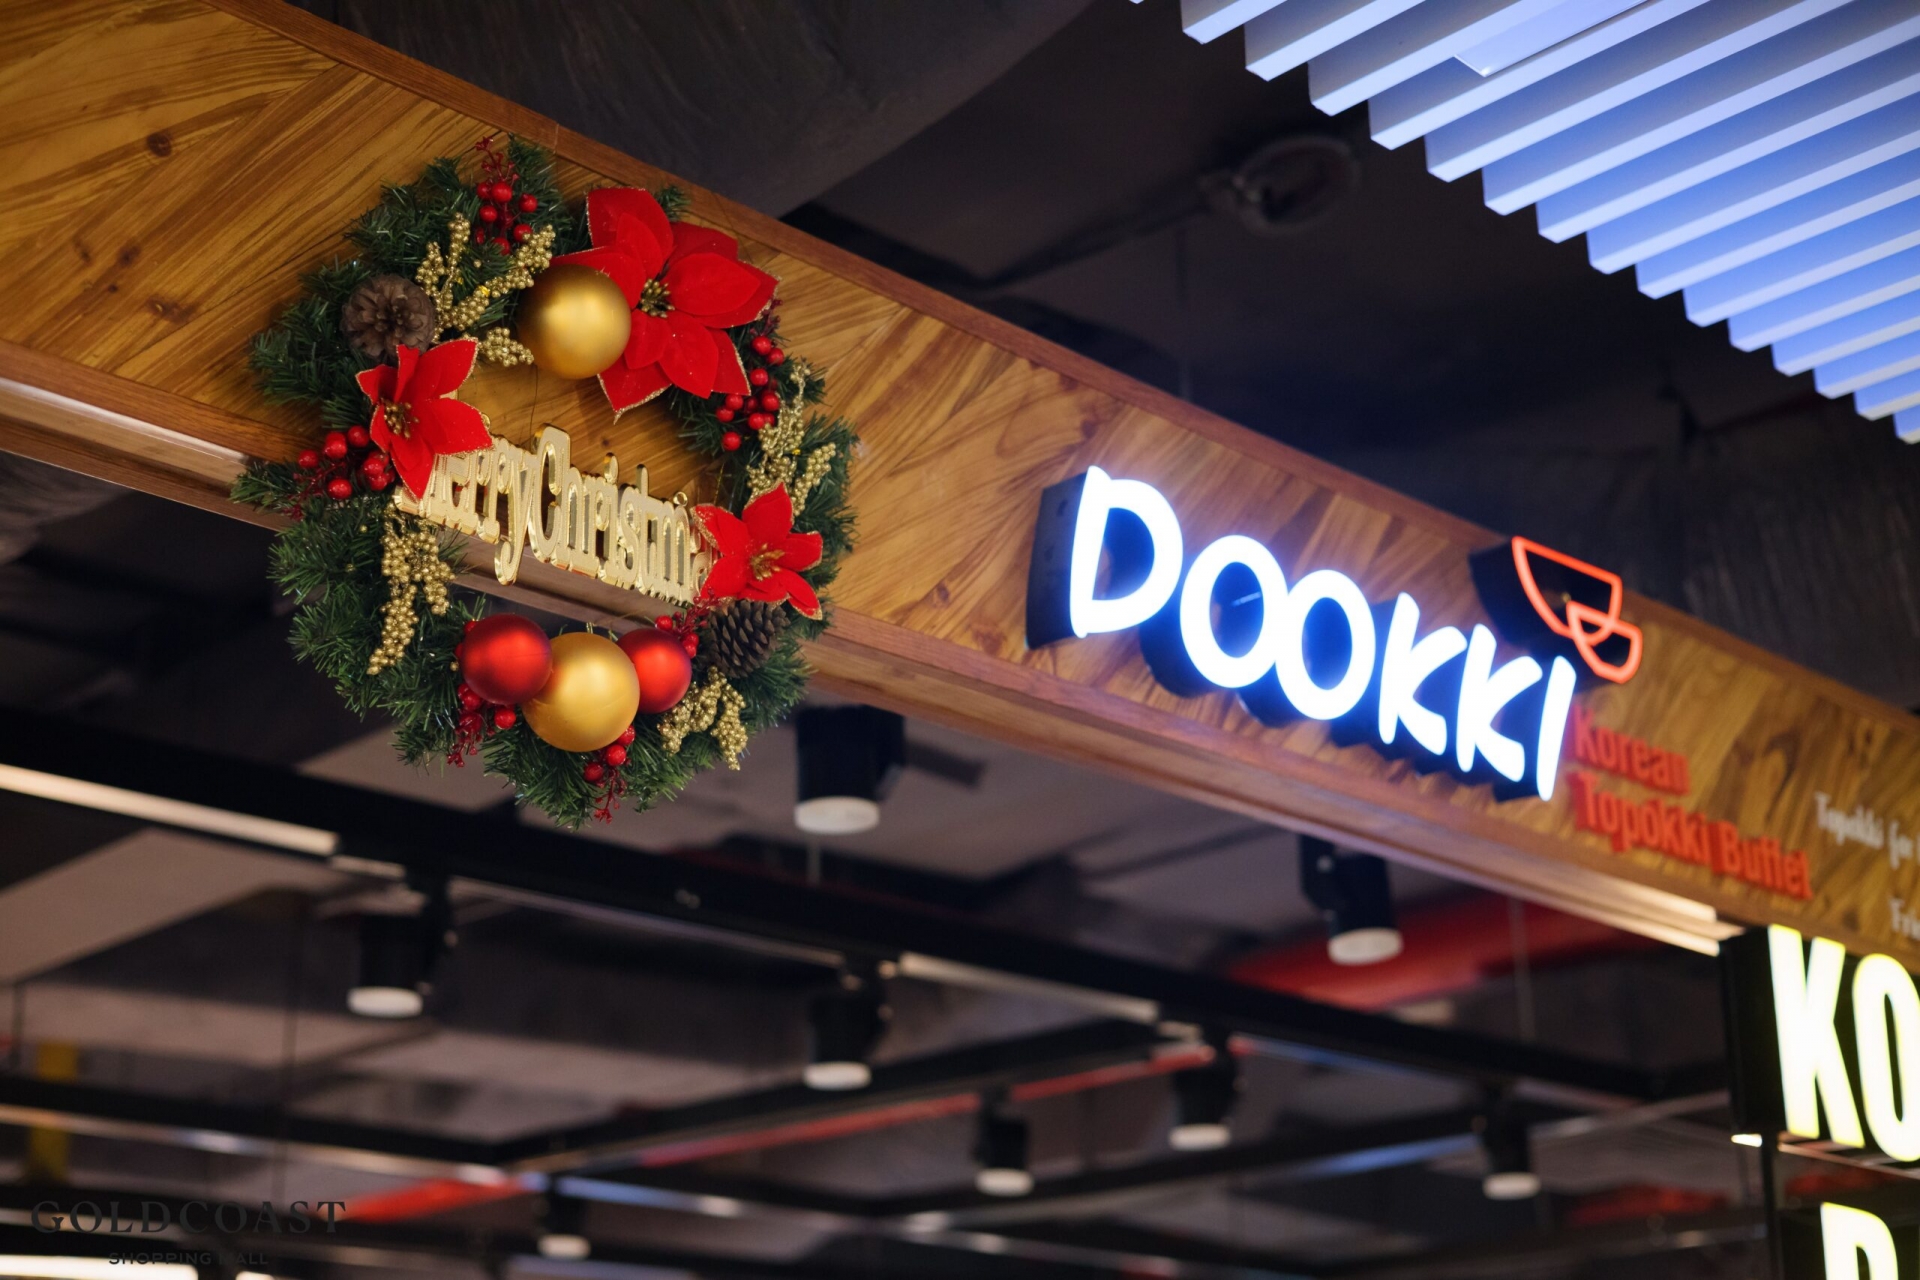 Bởi những nét độc đáo như vậy mà đến nay Dookki đã chạm mốc 30 nhà hàng trên khắp cả nước